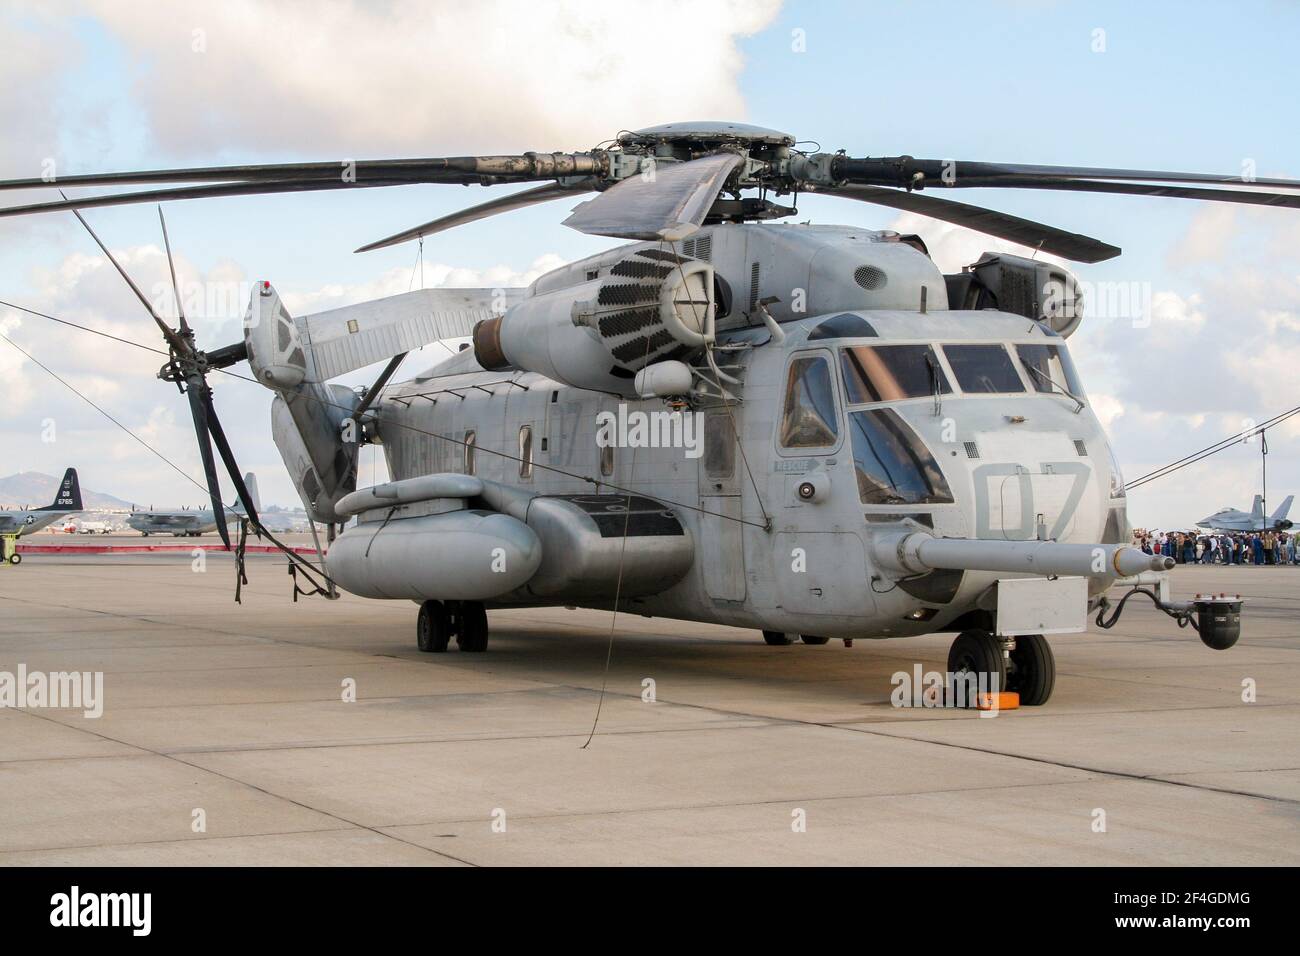 US Marines CH-53E hélicoptère militaire Super Stallion à bord de sa base de 39 à la station aérienne Miramar. Californie, États-Unis - 15 octobre 2016. Banque D'Images